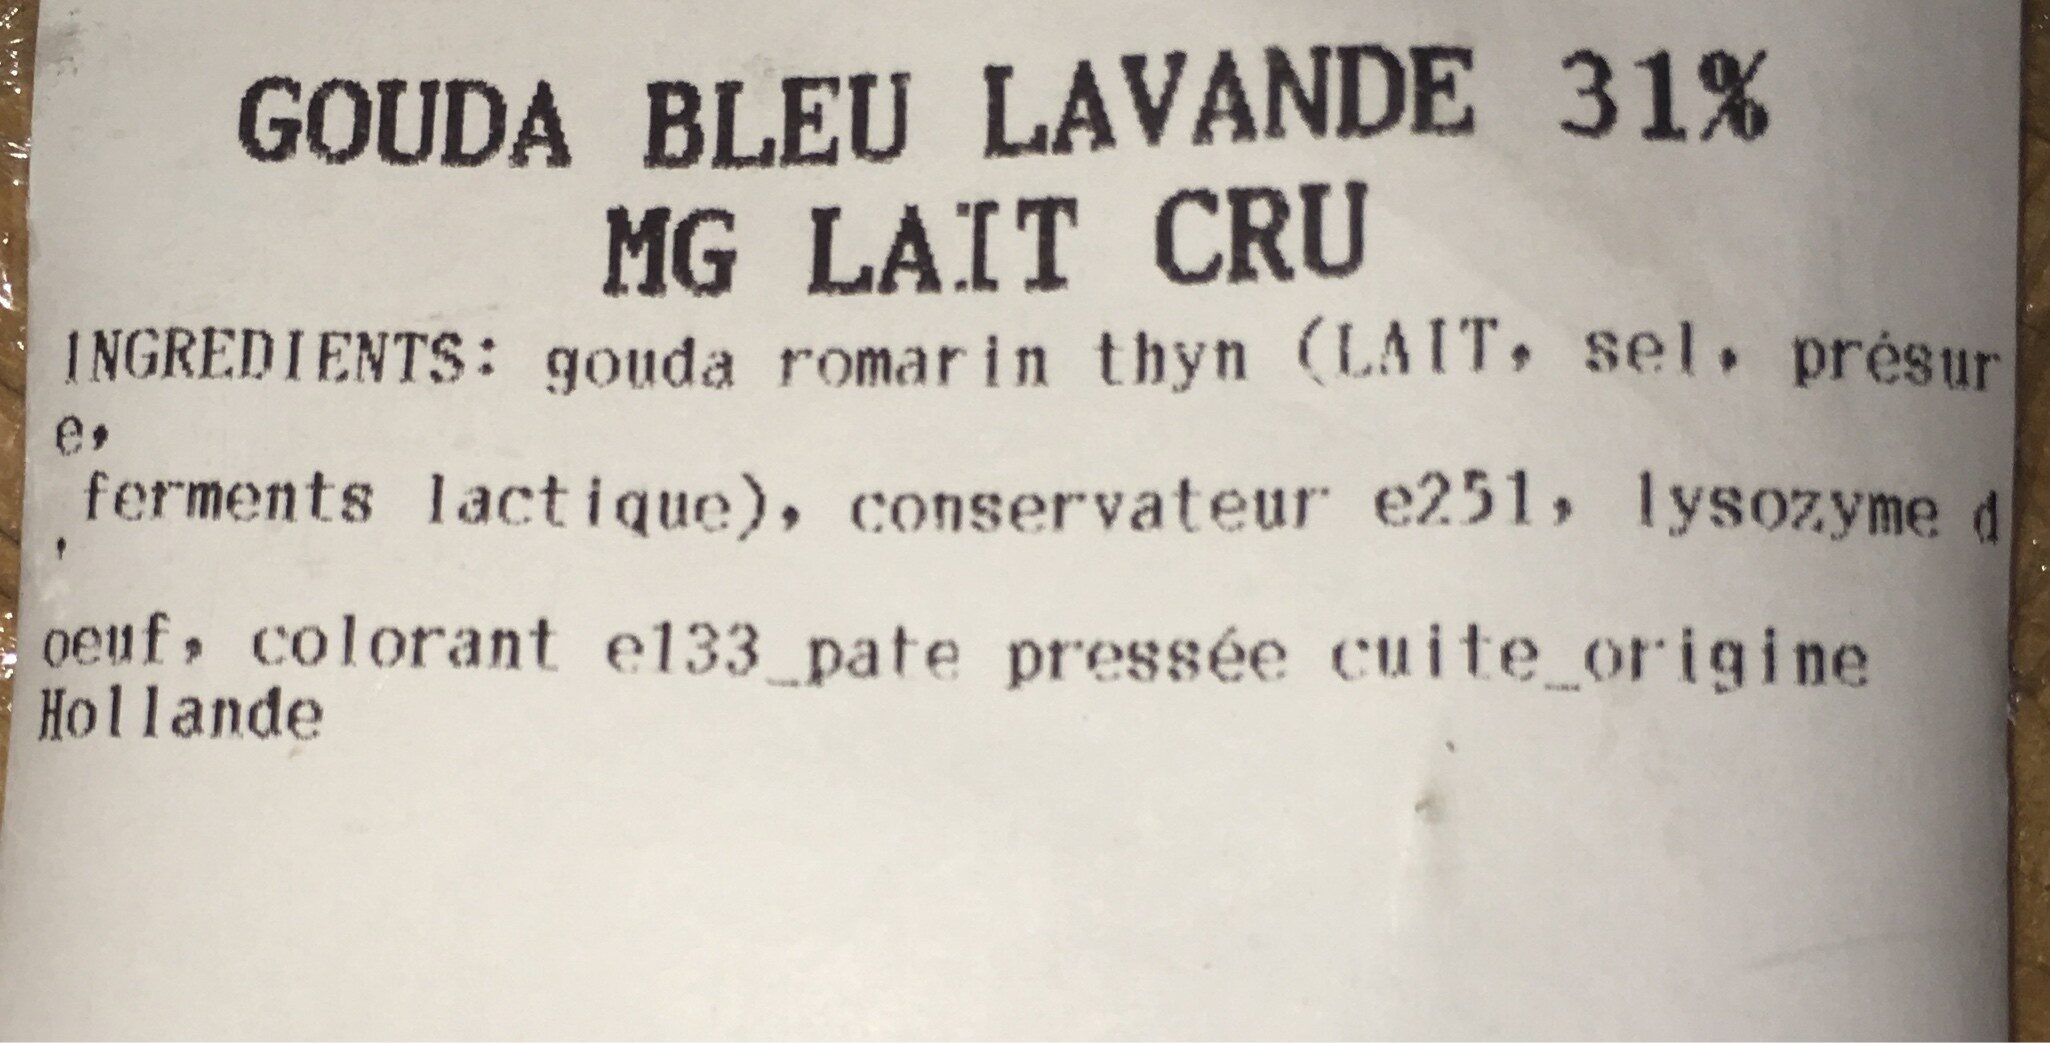 Gouda bleu lavande - Ingredients - fr